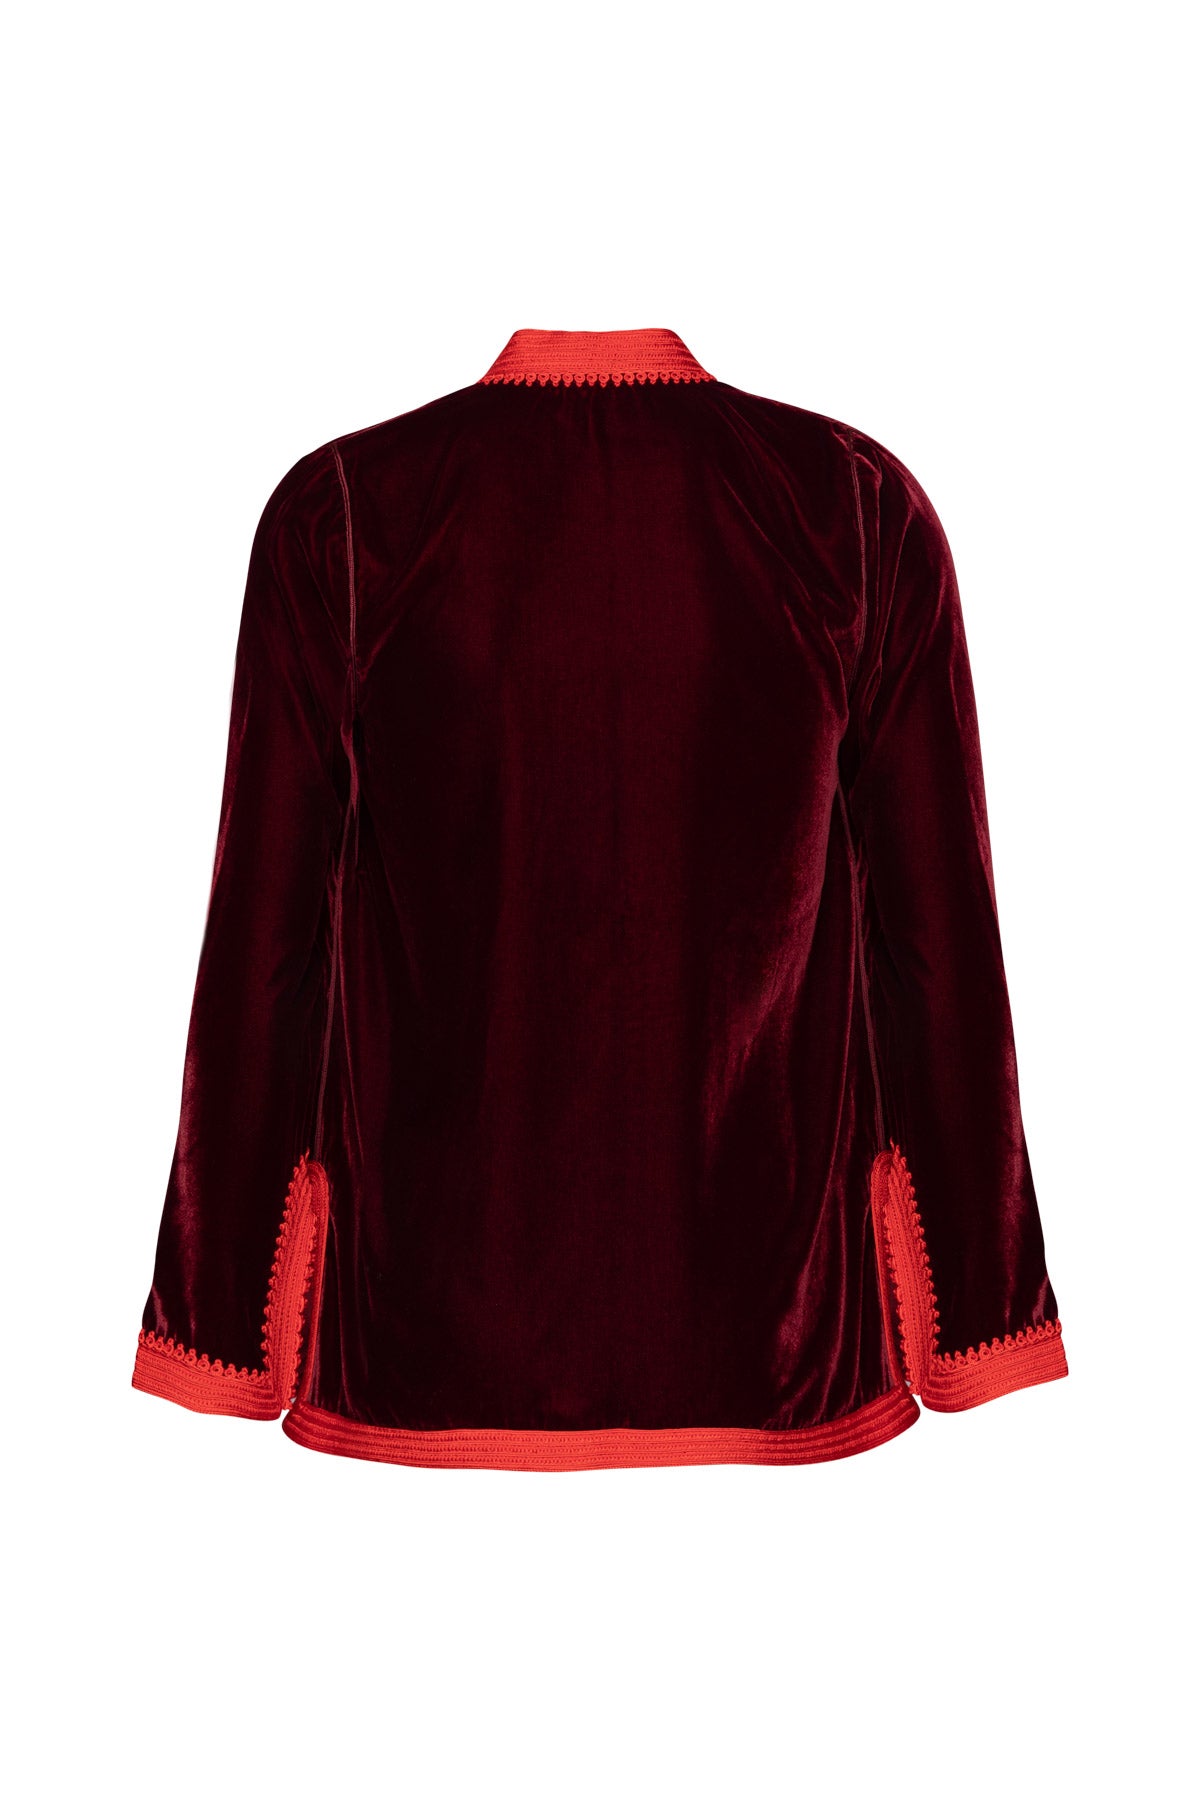 Women's Moroccan Velvet Jacket - Burgundy